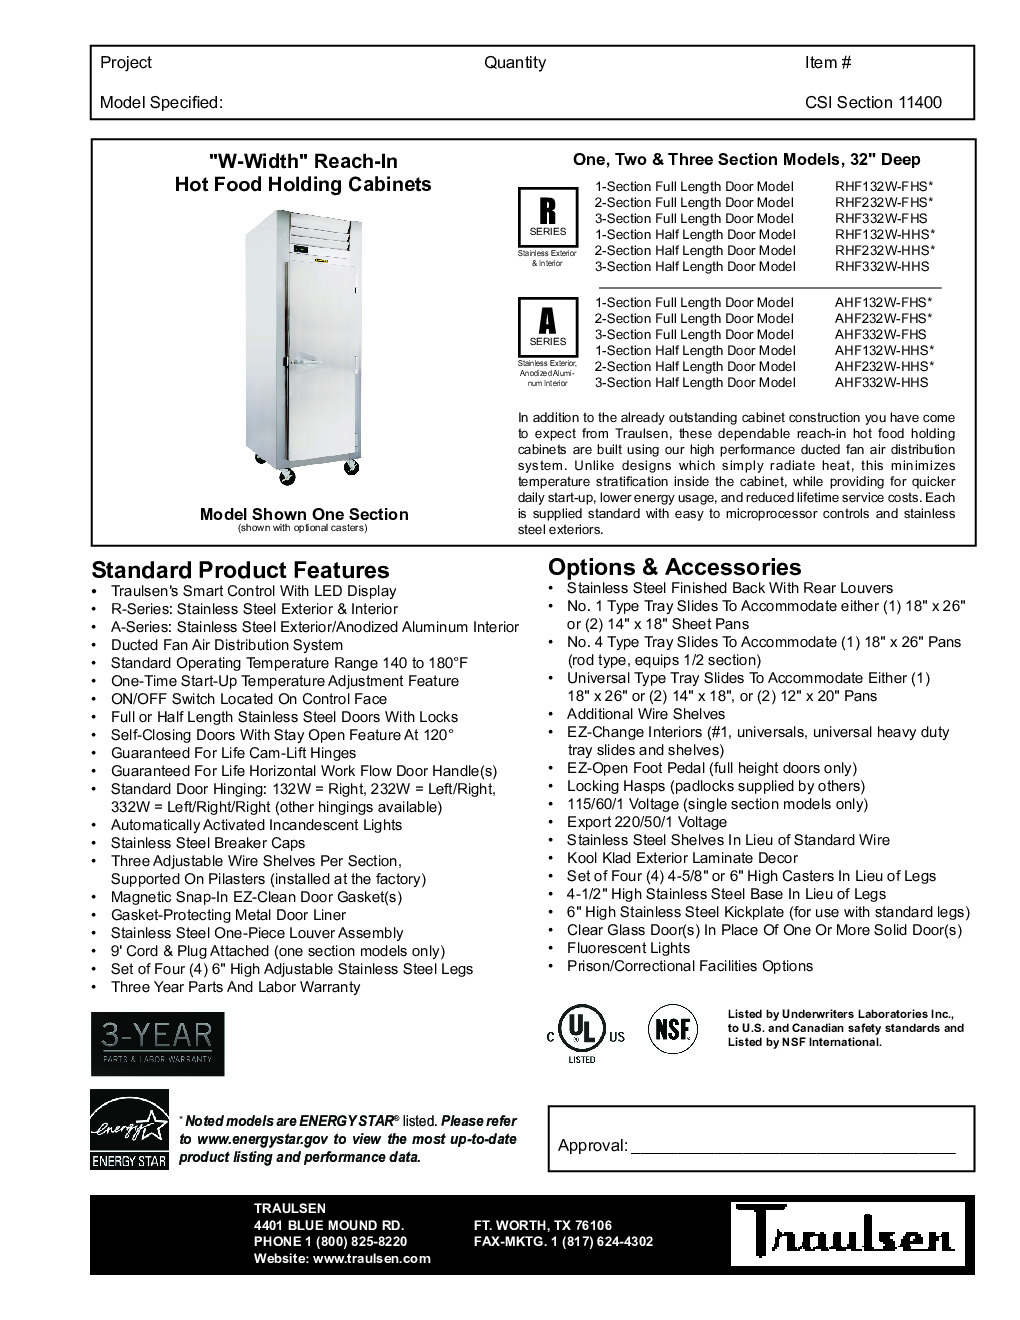 Traulsen RHF332W-FHS Reach-In Heated Cabinet